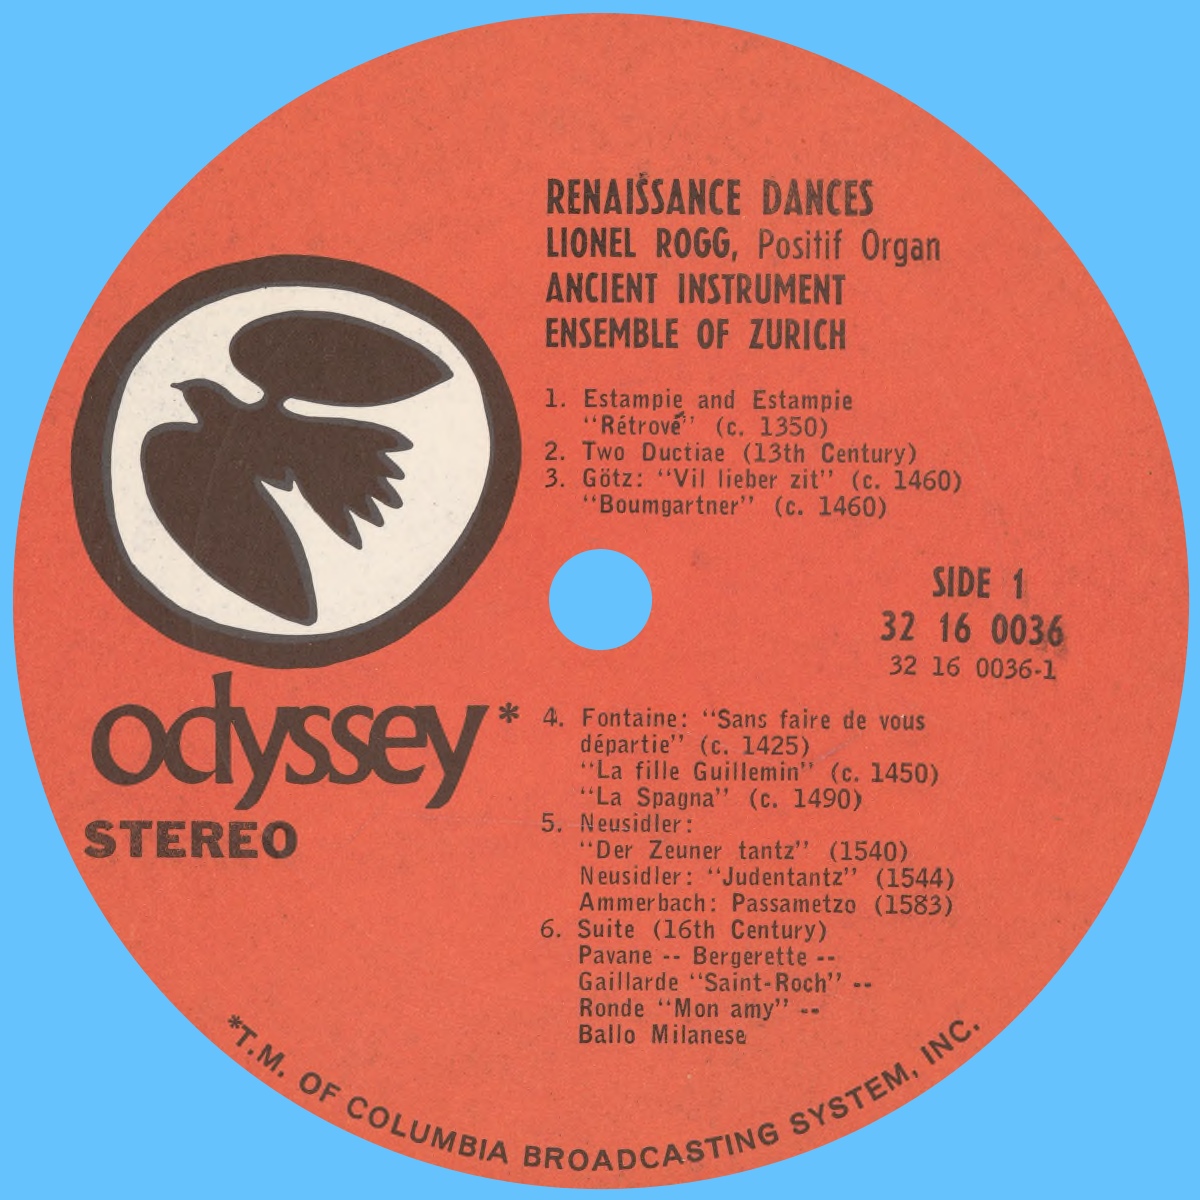 Étiquette recto du disque Odyssey 32 16 0036 (Renaissance Dances from the 14th through 16th Centuries)